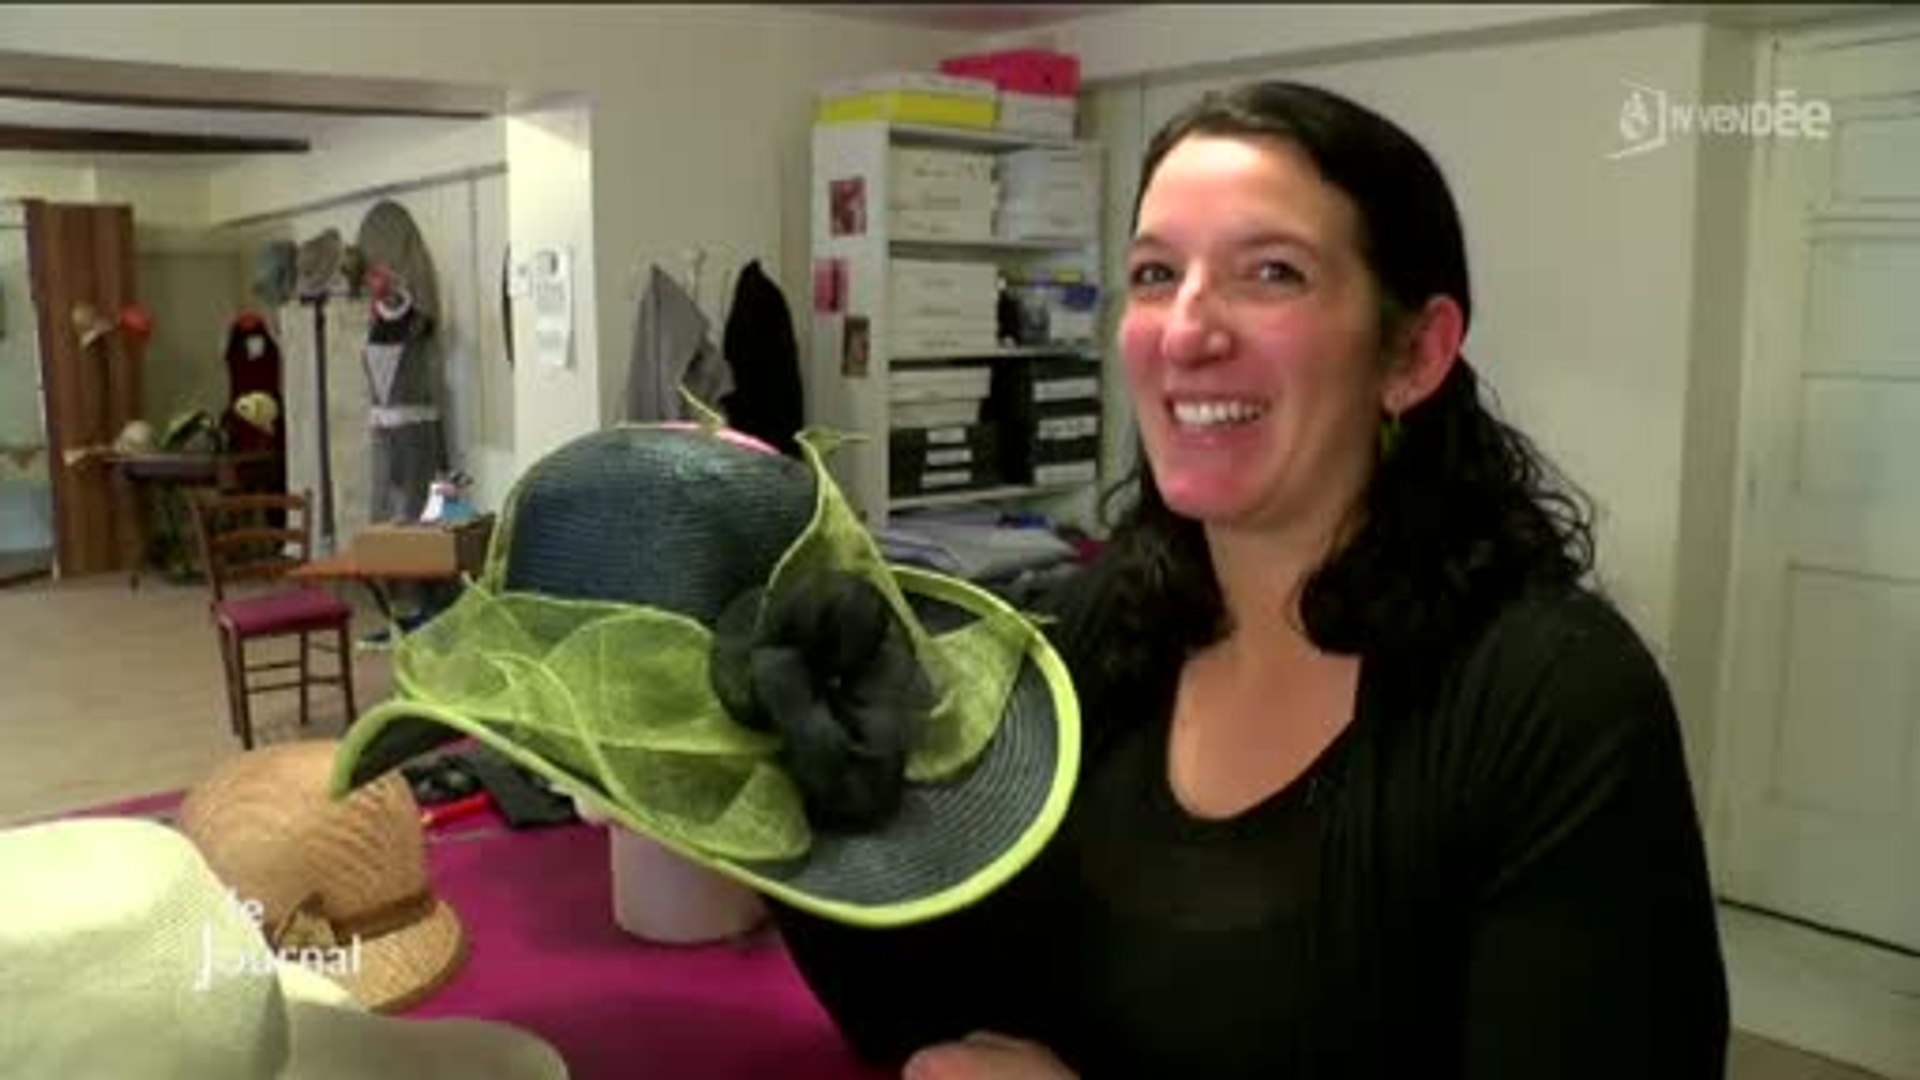 L. Modisty : atelier de chapeaux de Falleron (Vendée) - Vidéo Dailymotion